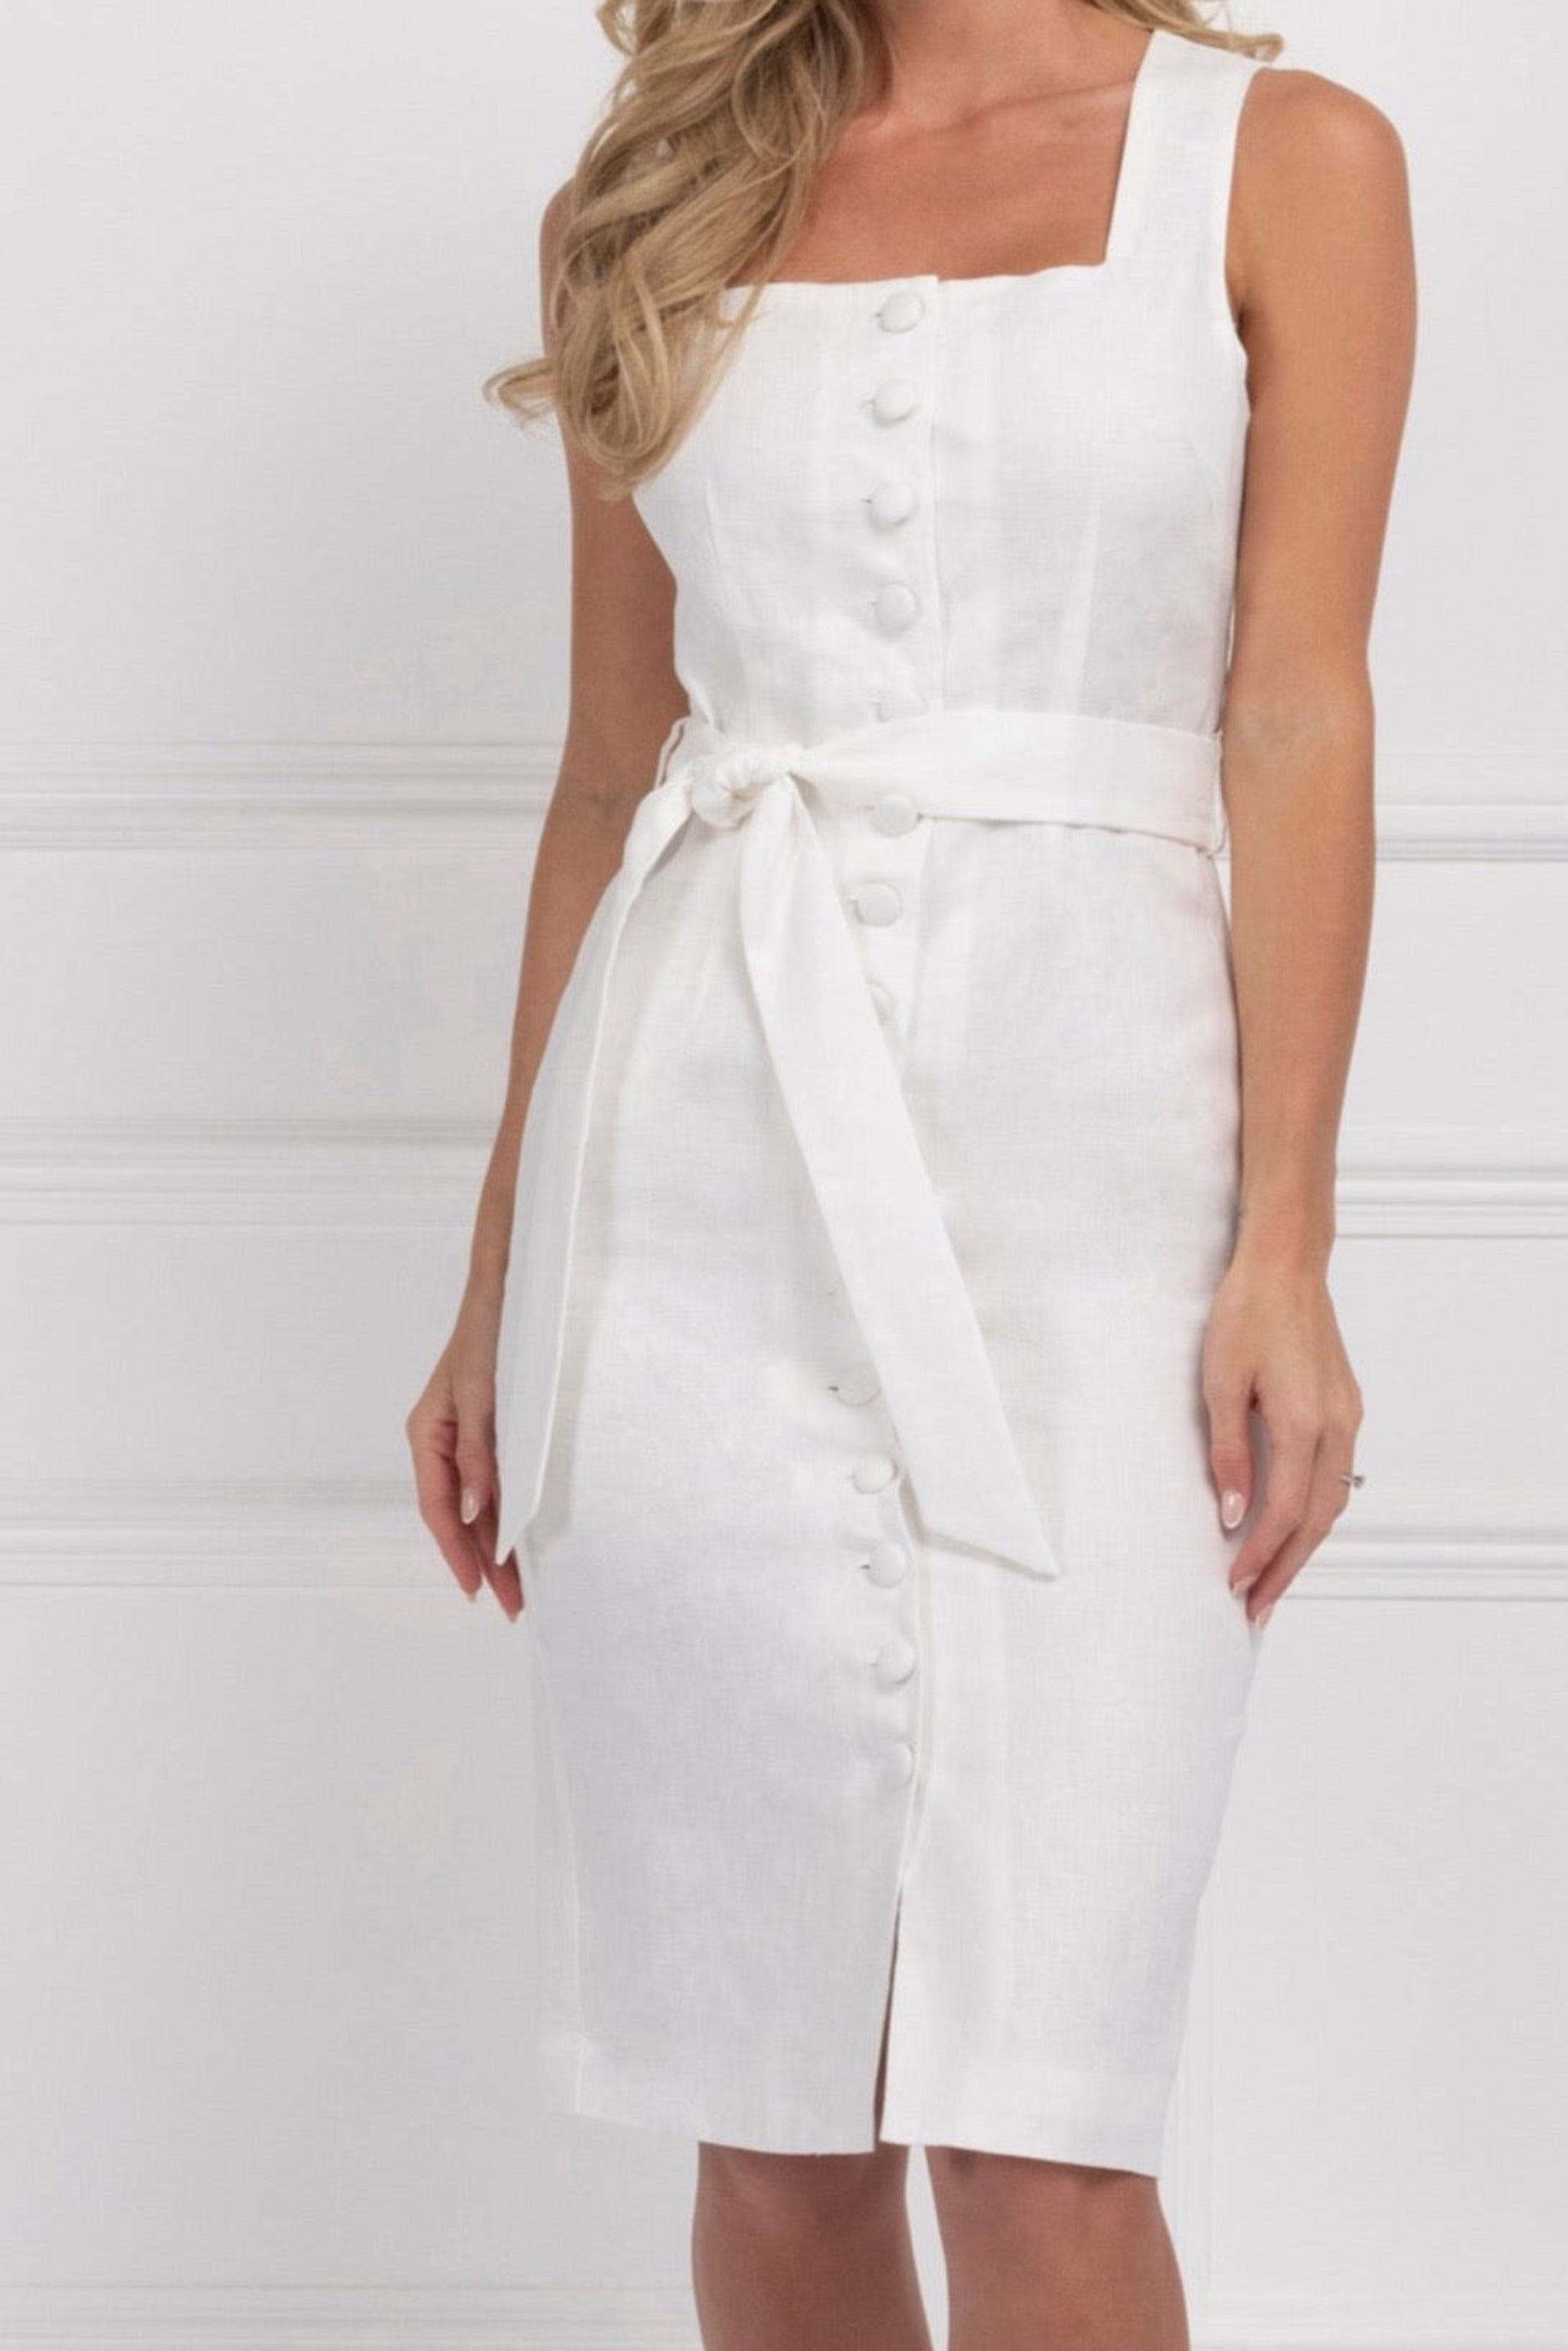 Linen Dress (White)